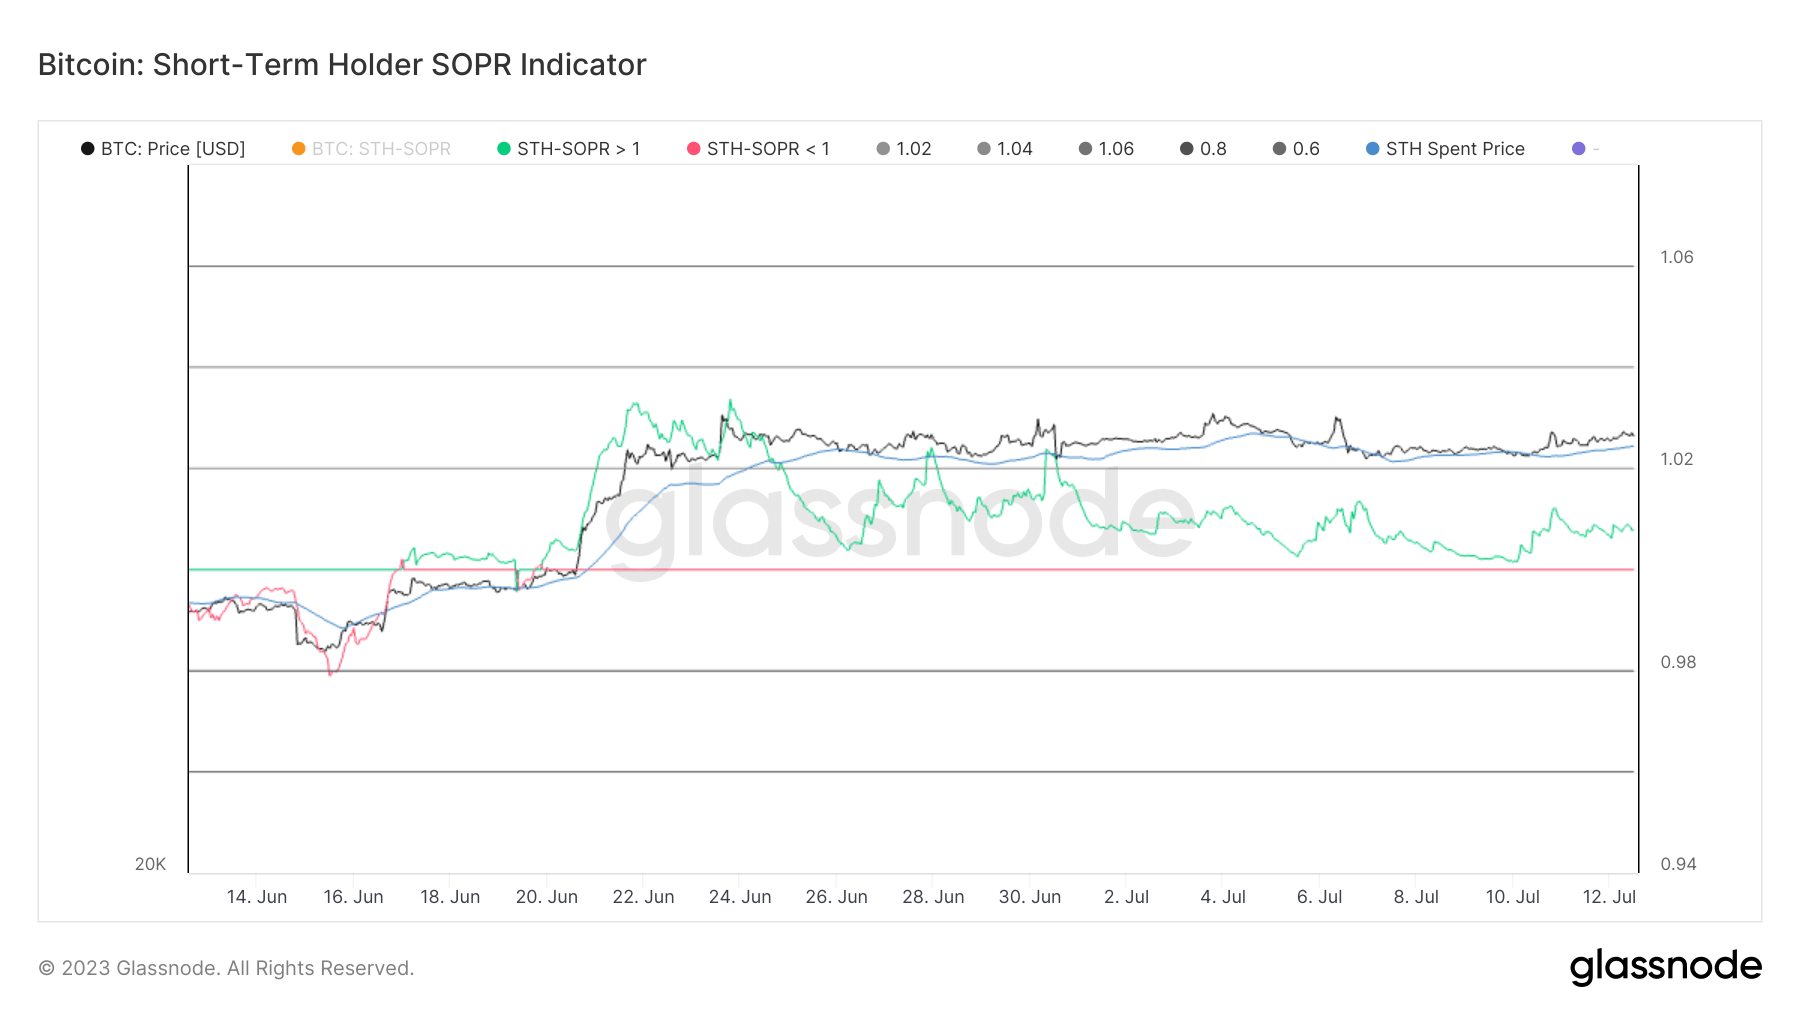 SOPR index for short-term holders